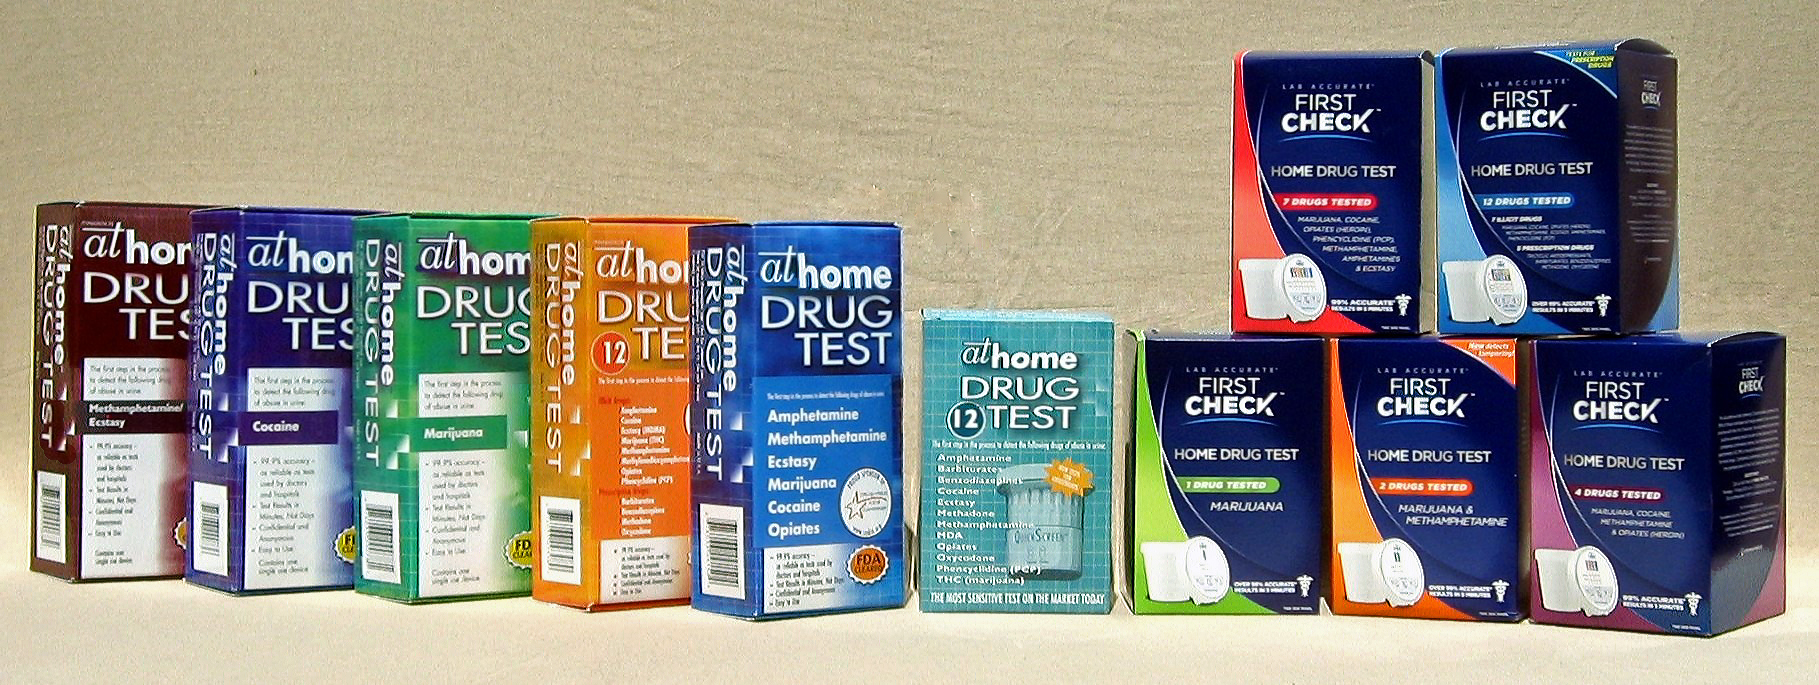 Home Drug Test Kits